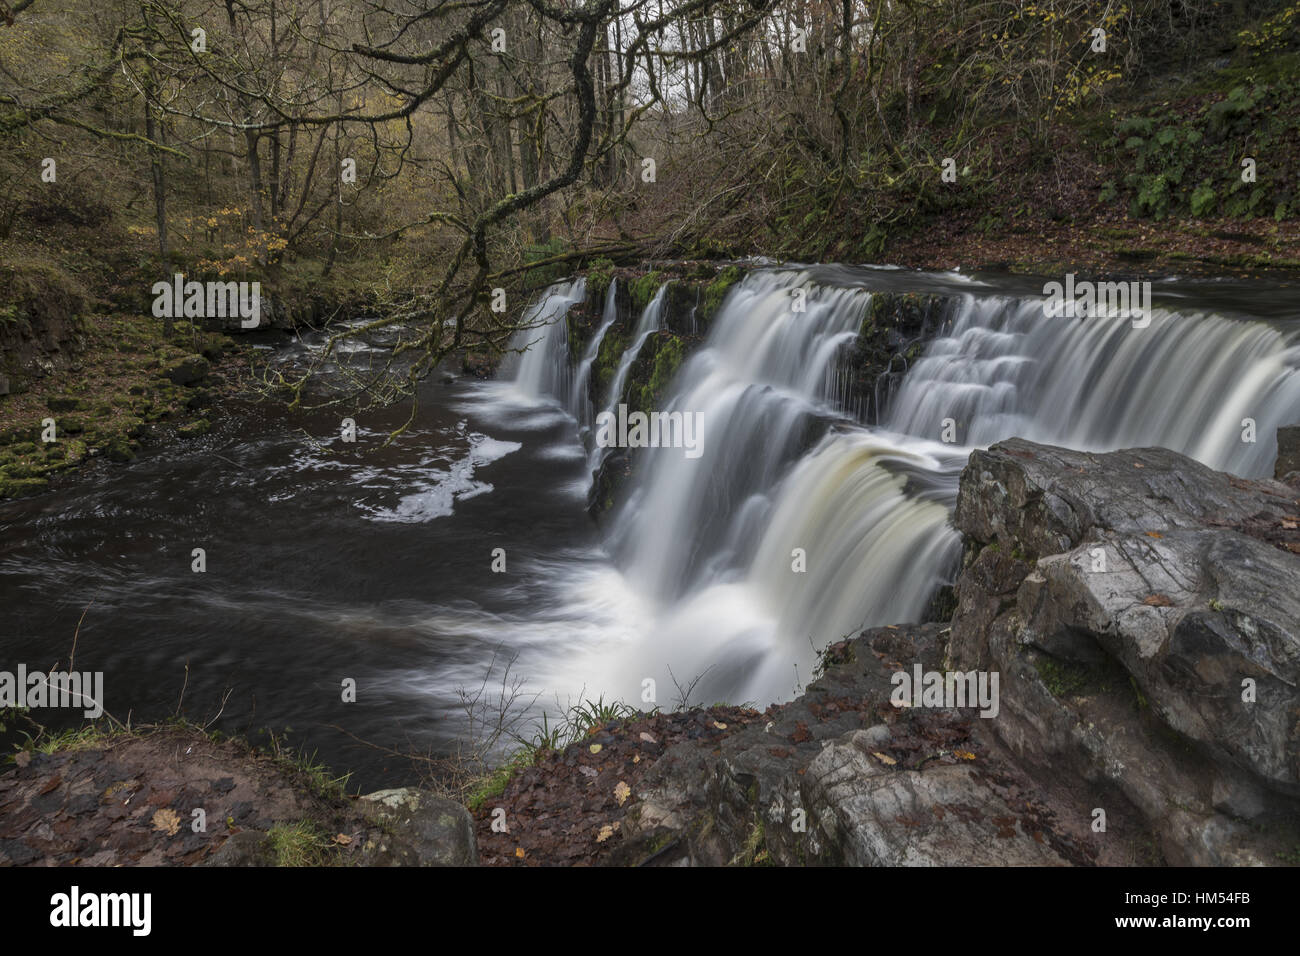 Fallen Sie Sgwd y Pannwr, die Fuller Afon Mellte, Ystradfellte, vier Wasserfälle, Brecon Beacons. Stockfoto